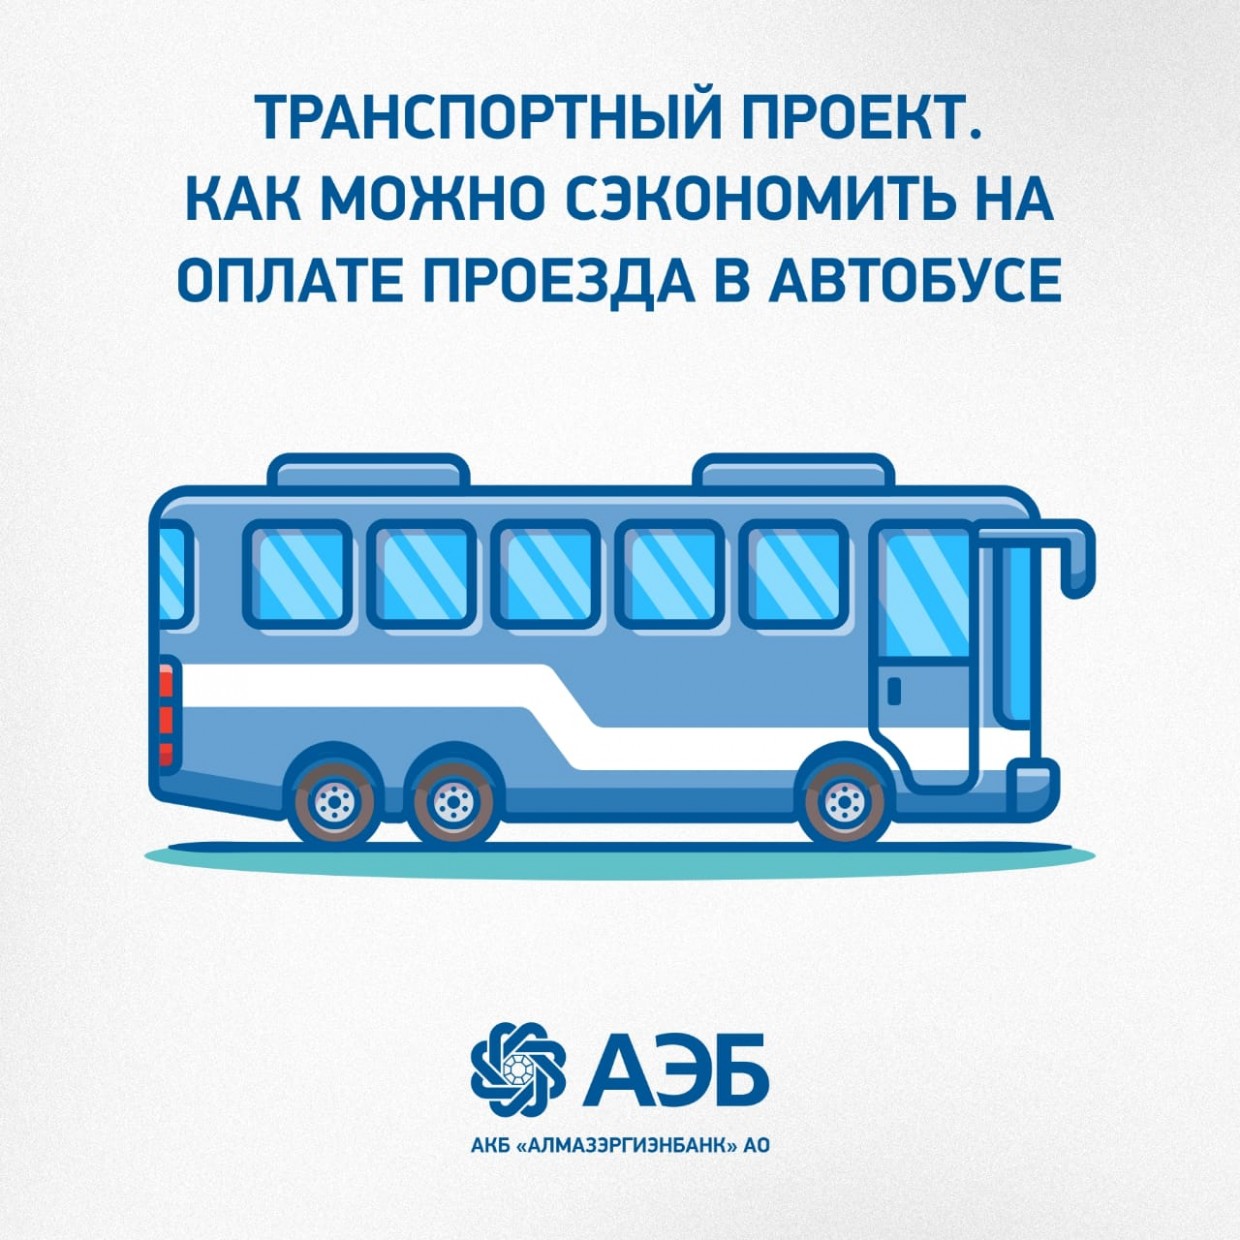 Транспортный проект. Как можно сэкономить на оплате проезда в автобусе